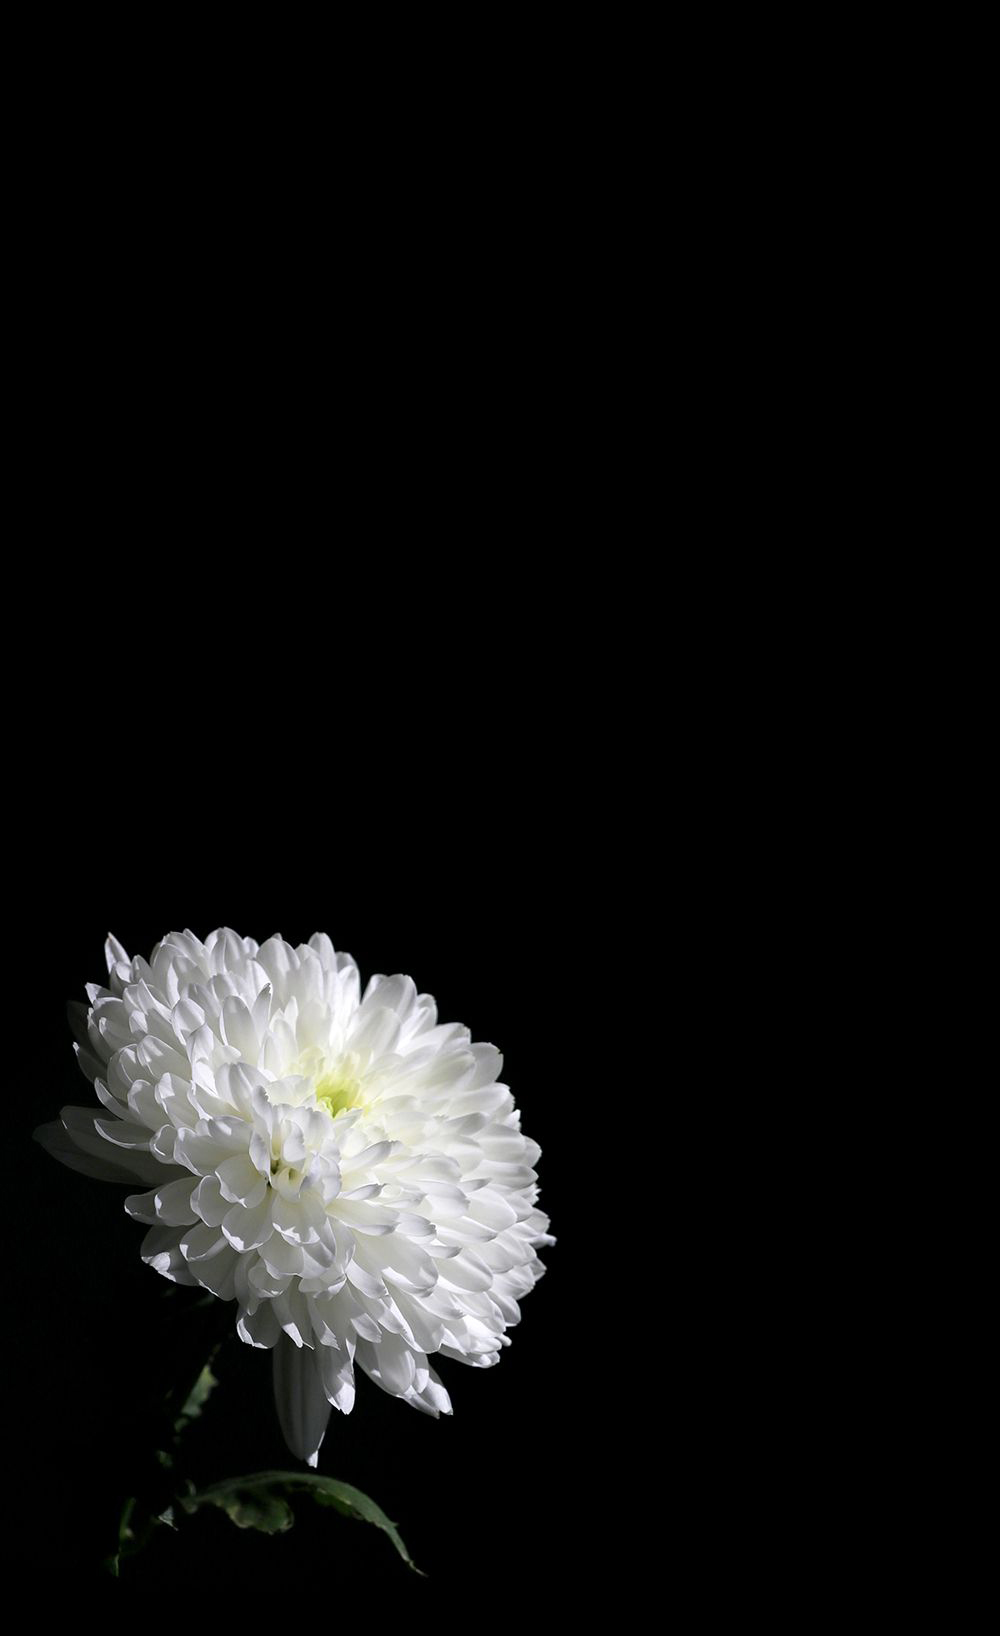 Ảnh hoa cúc đại đóa trắng nền đen